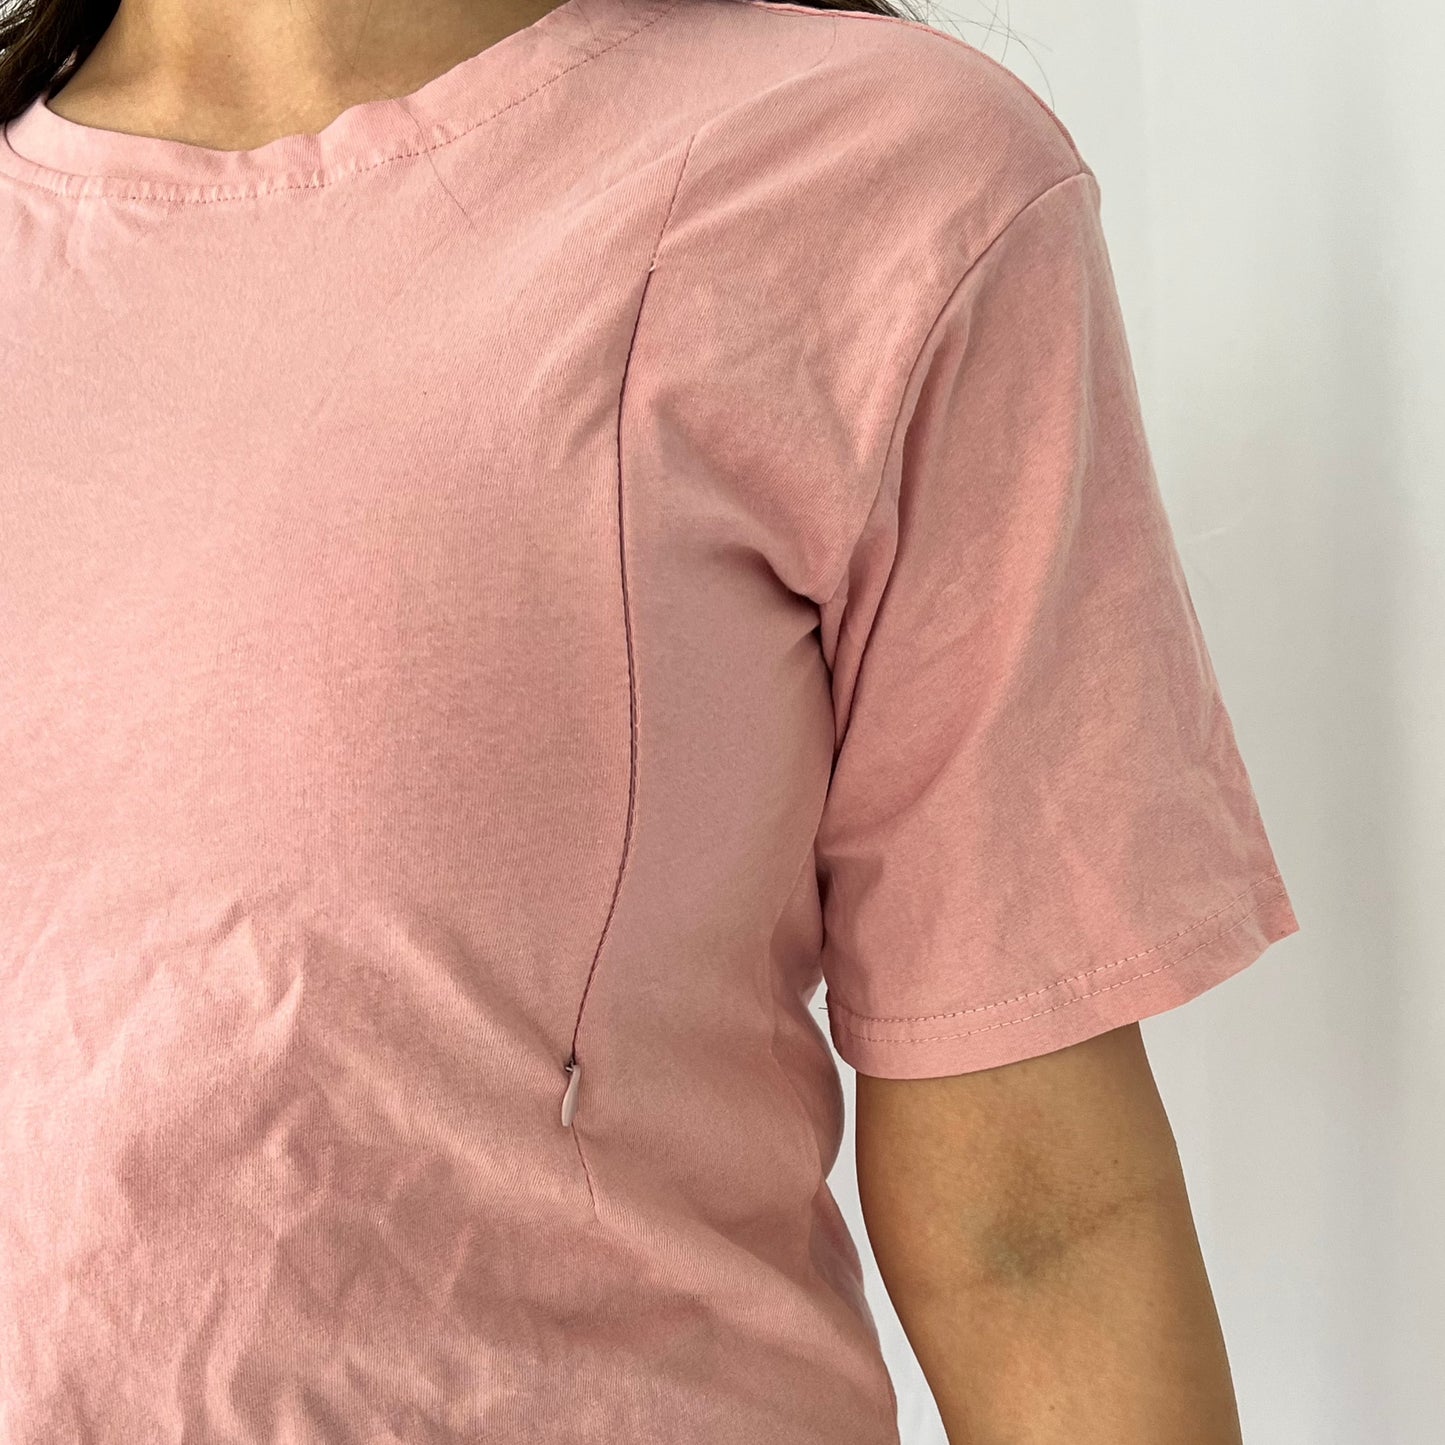 Nursing T-shirt- Pink